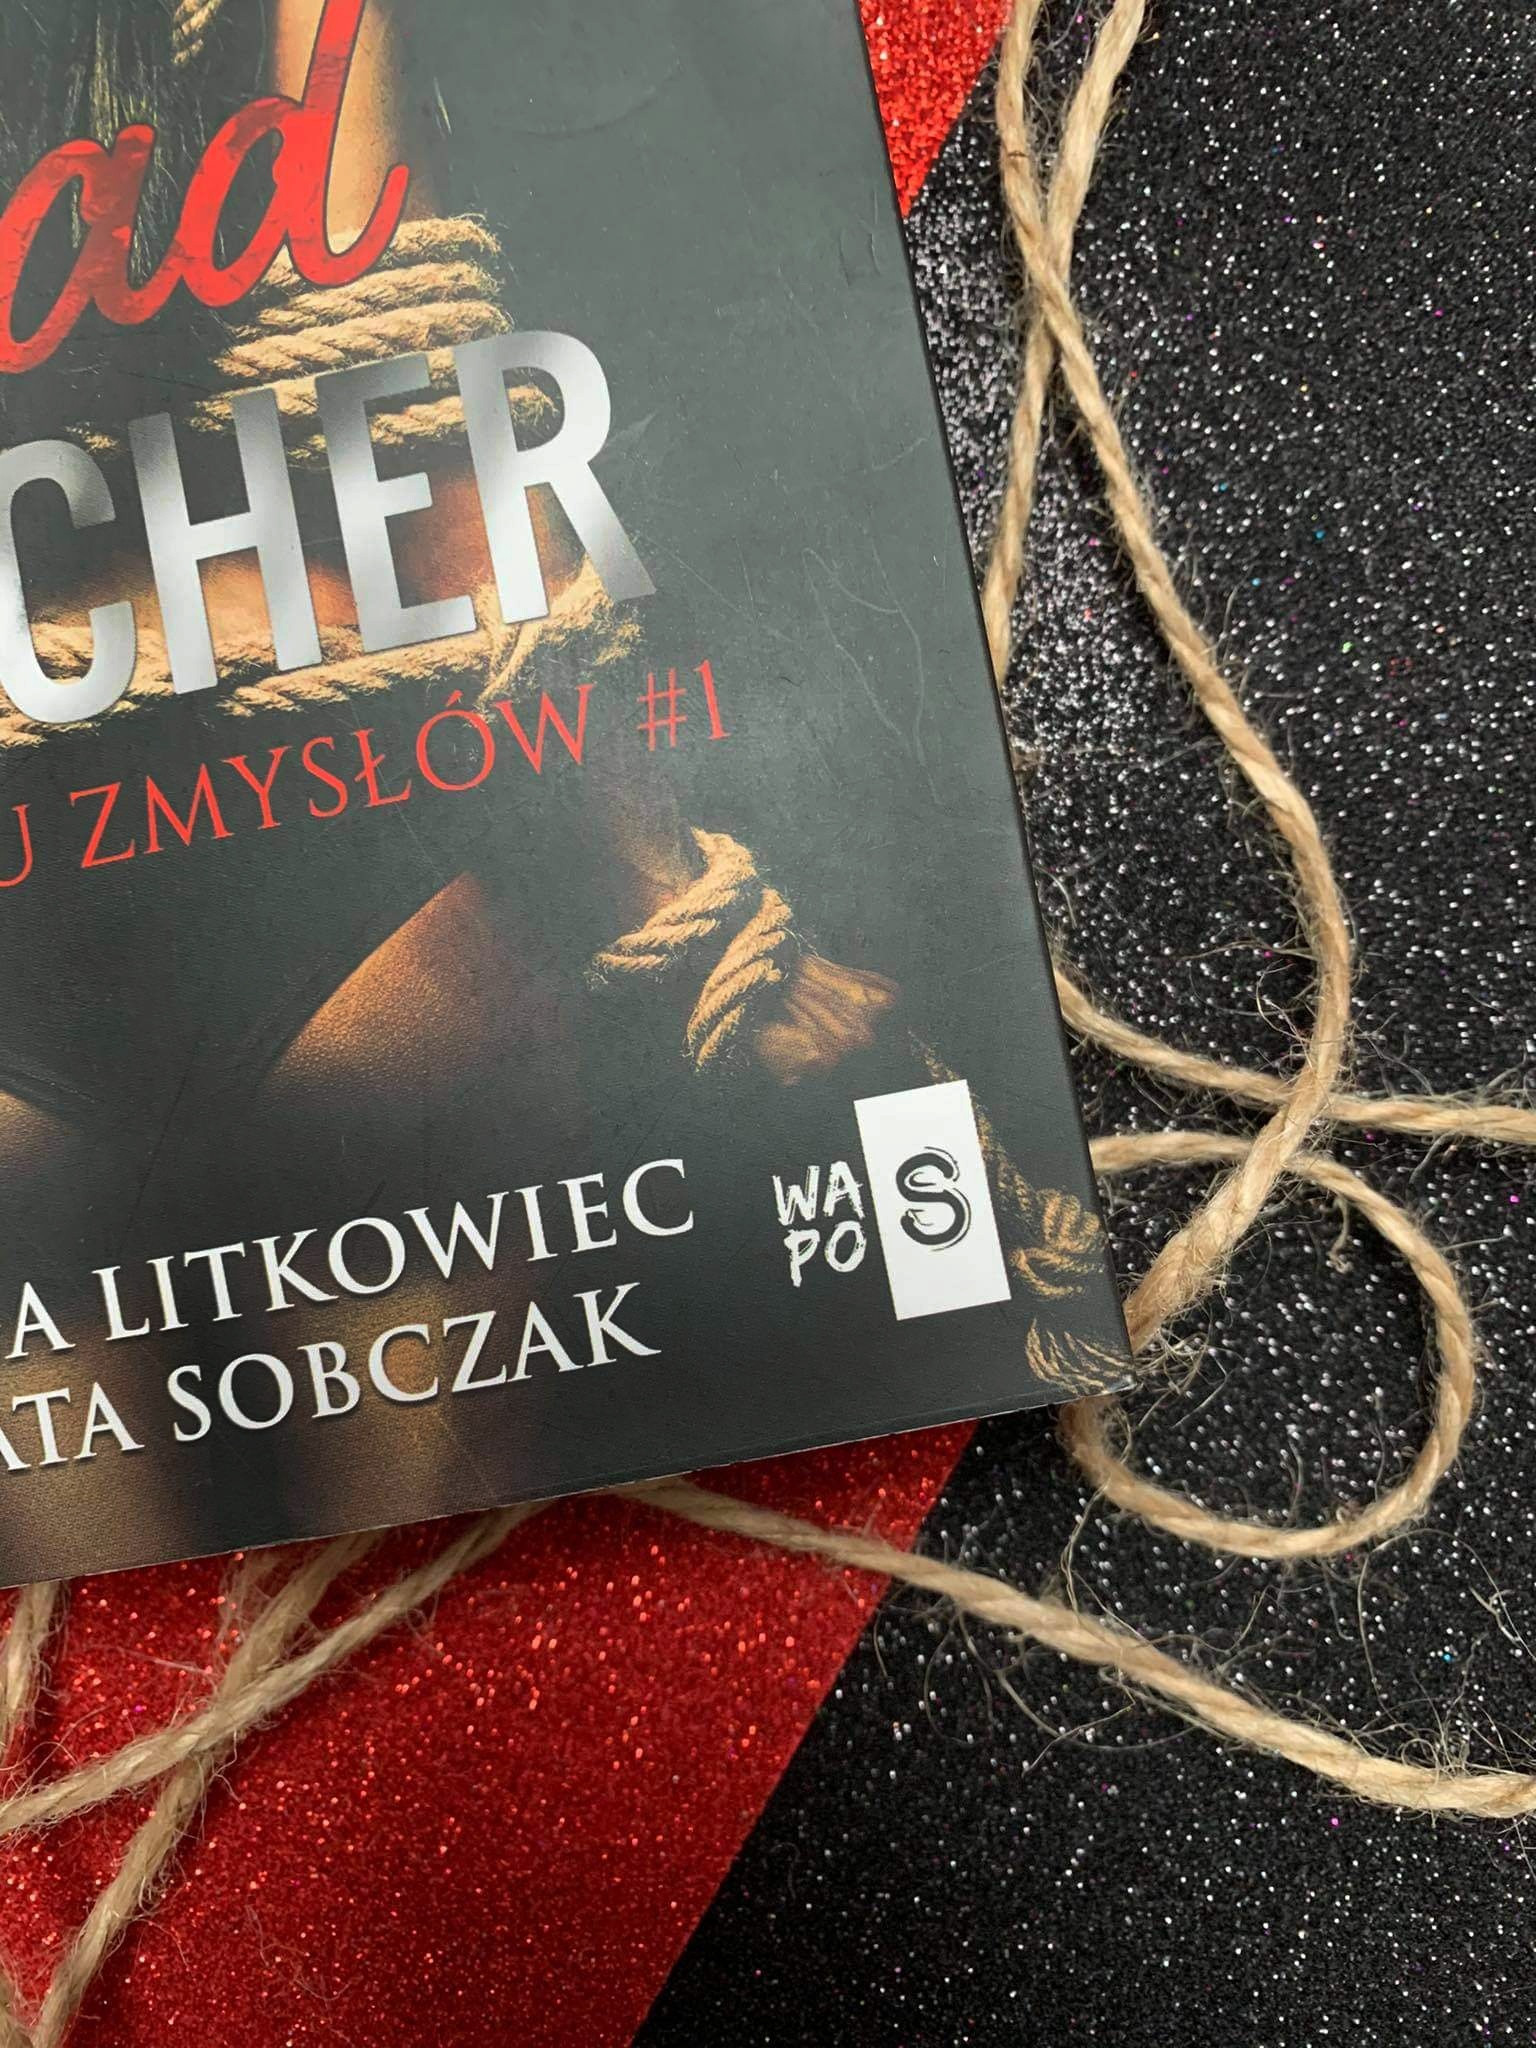 "Bad Teacher" Kinga Litkowiec, Agata Sobczak